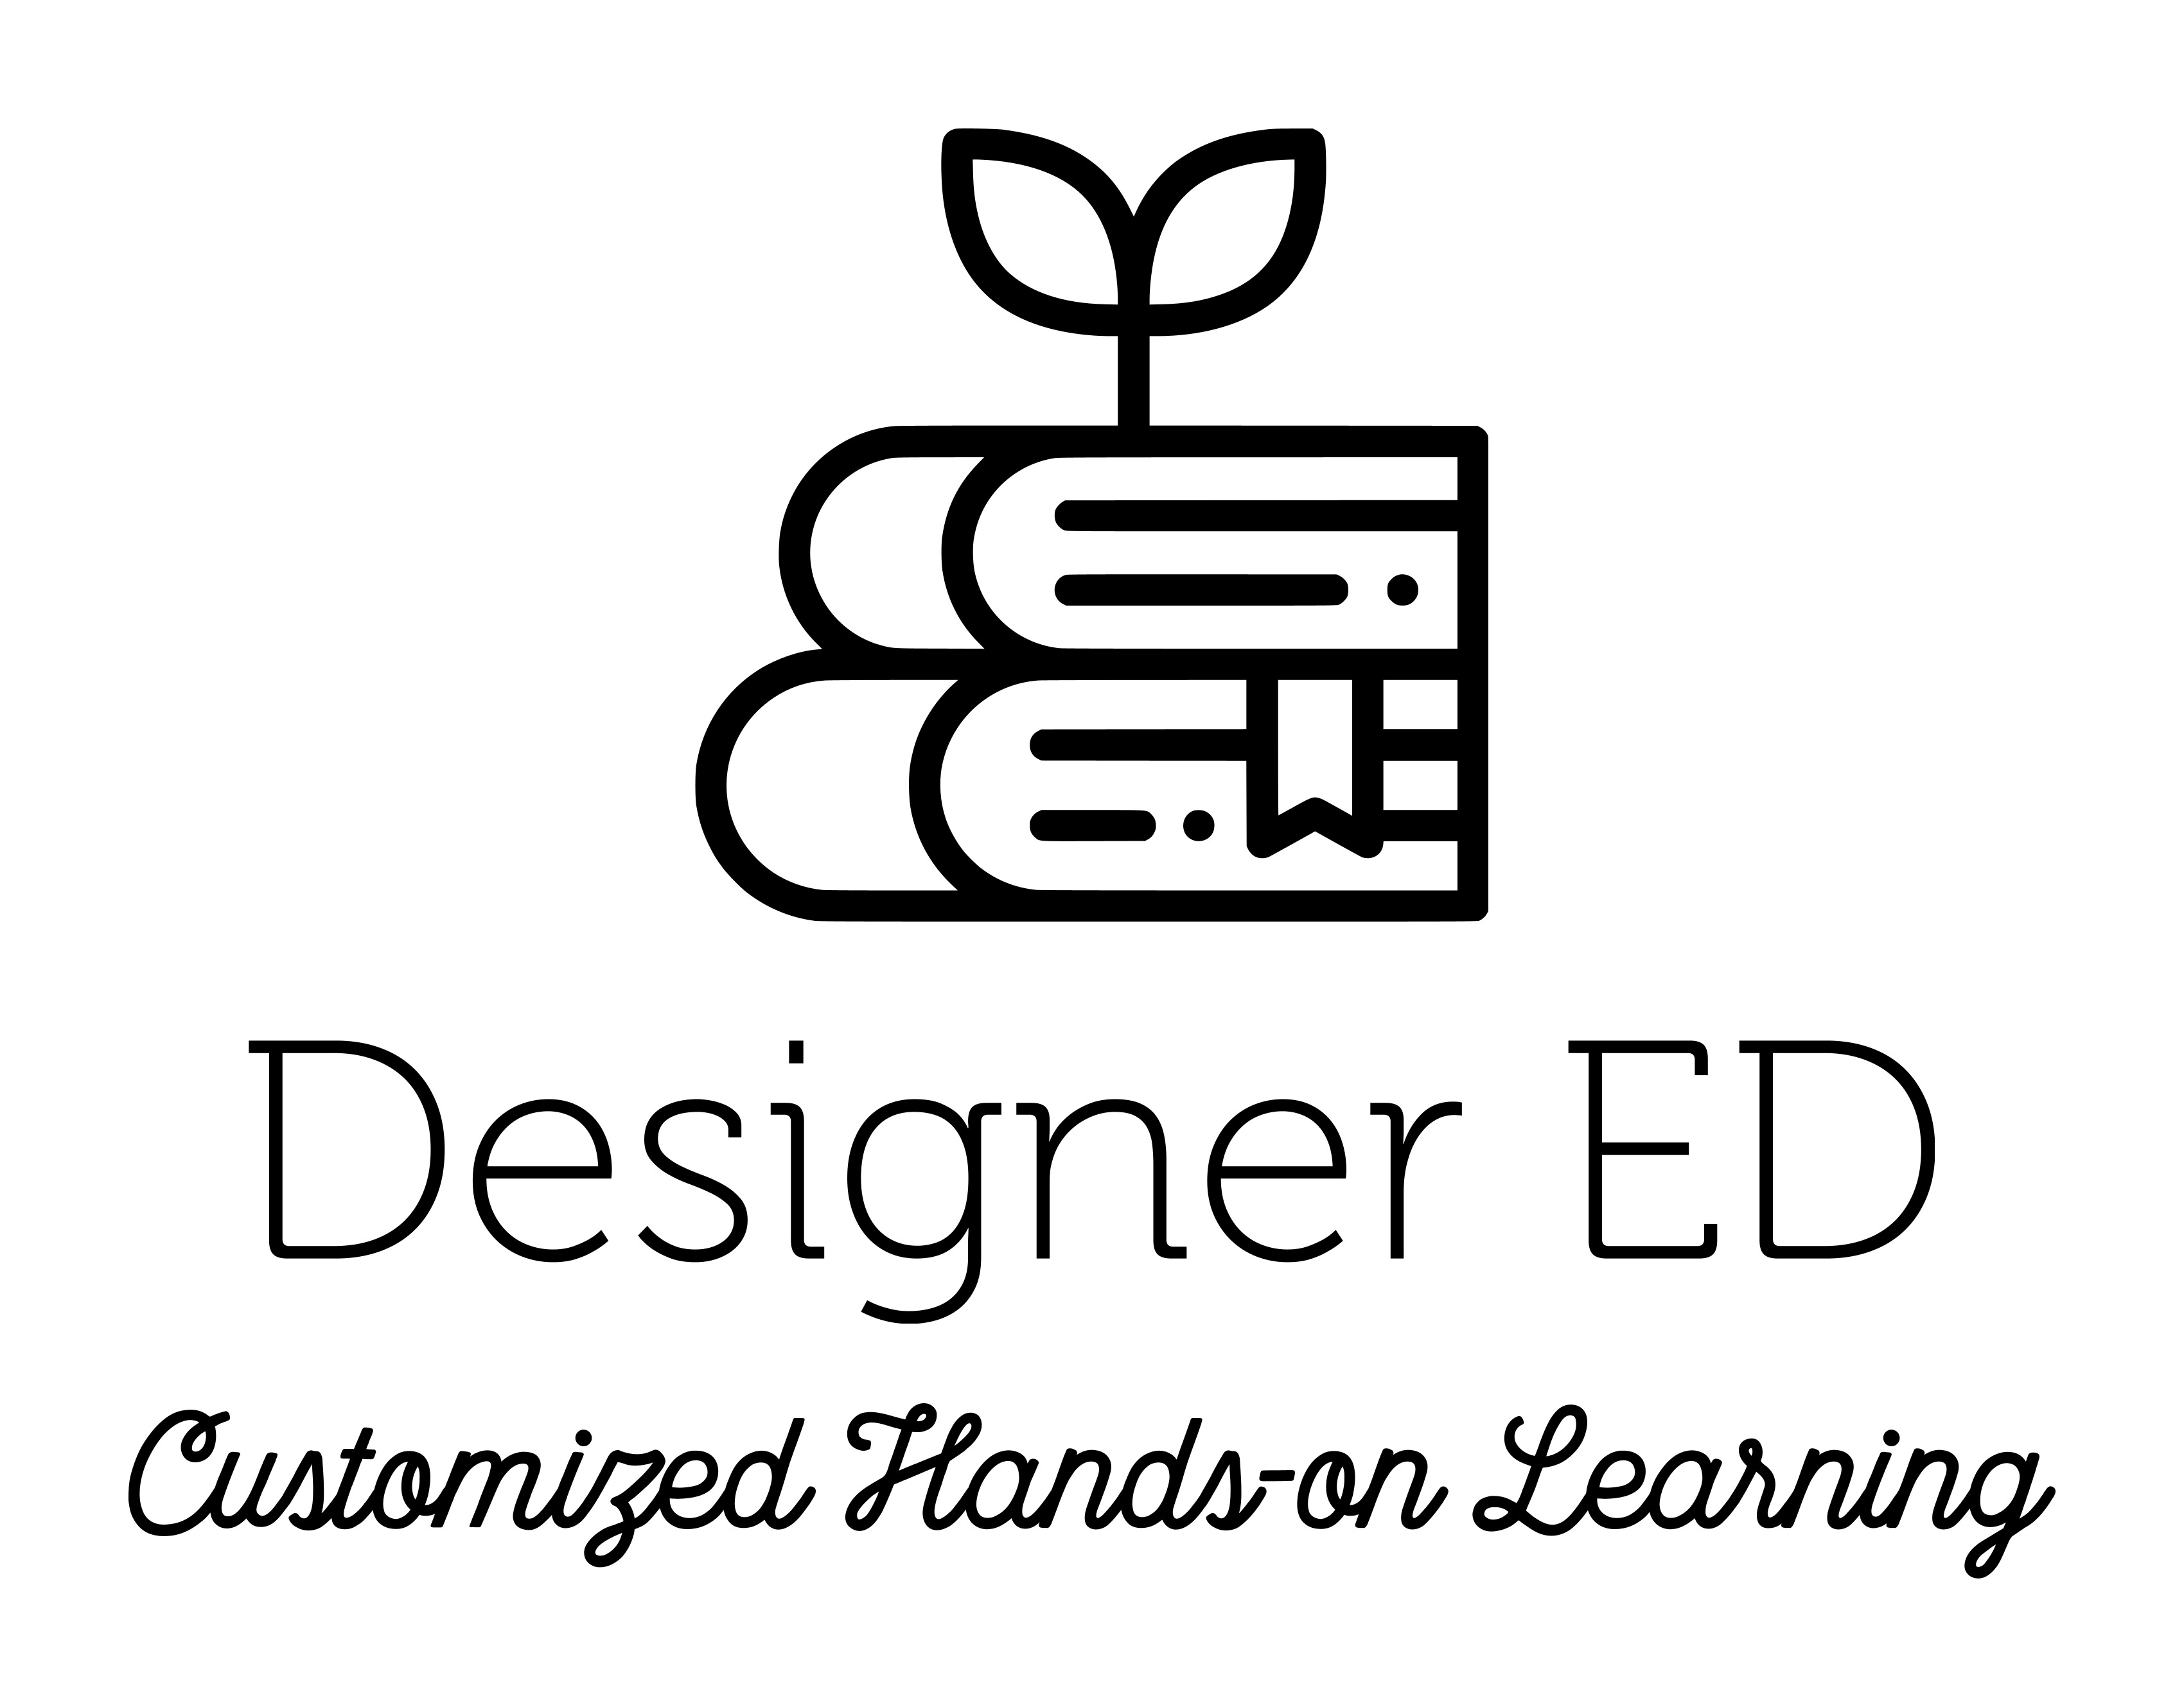 Designer Ed logo